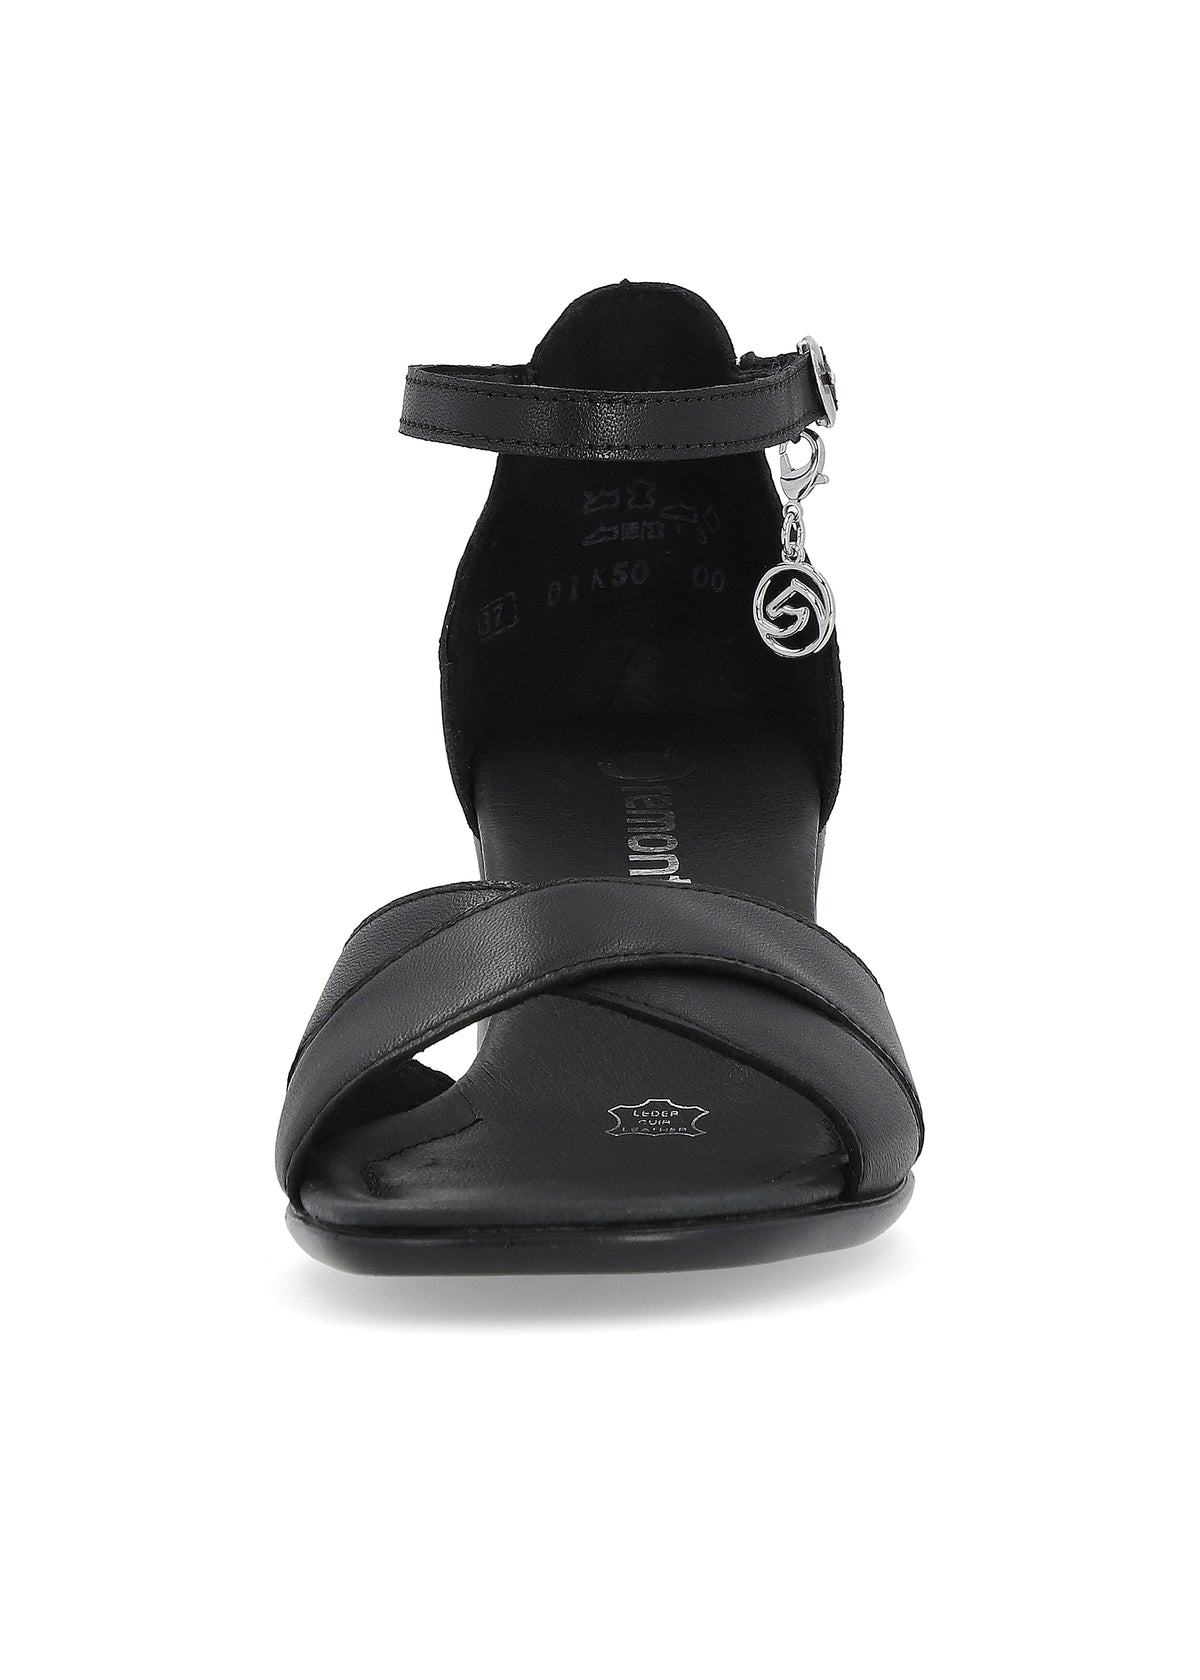 Sandals with stiletto heels - black